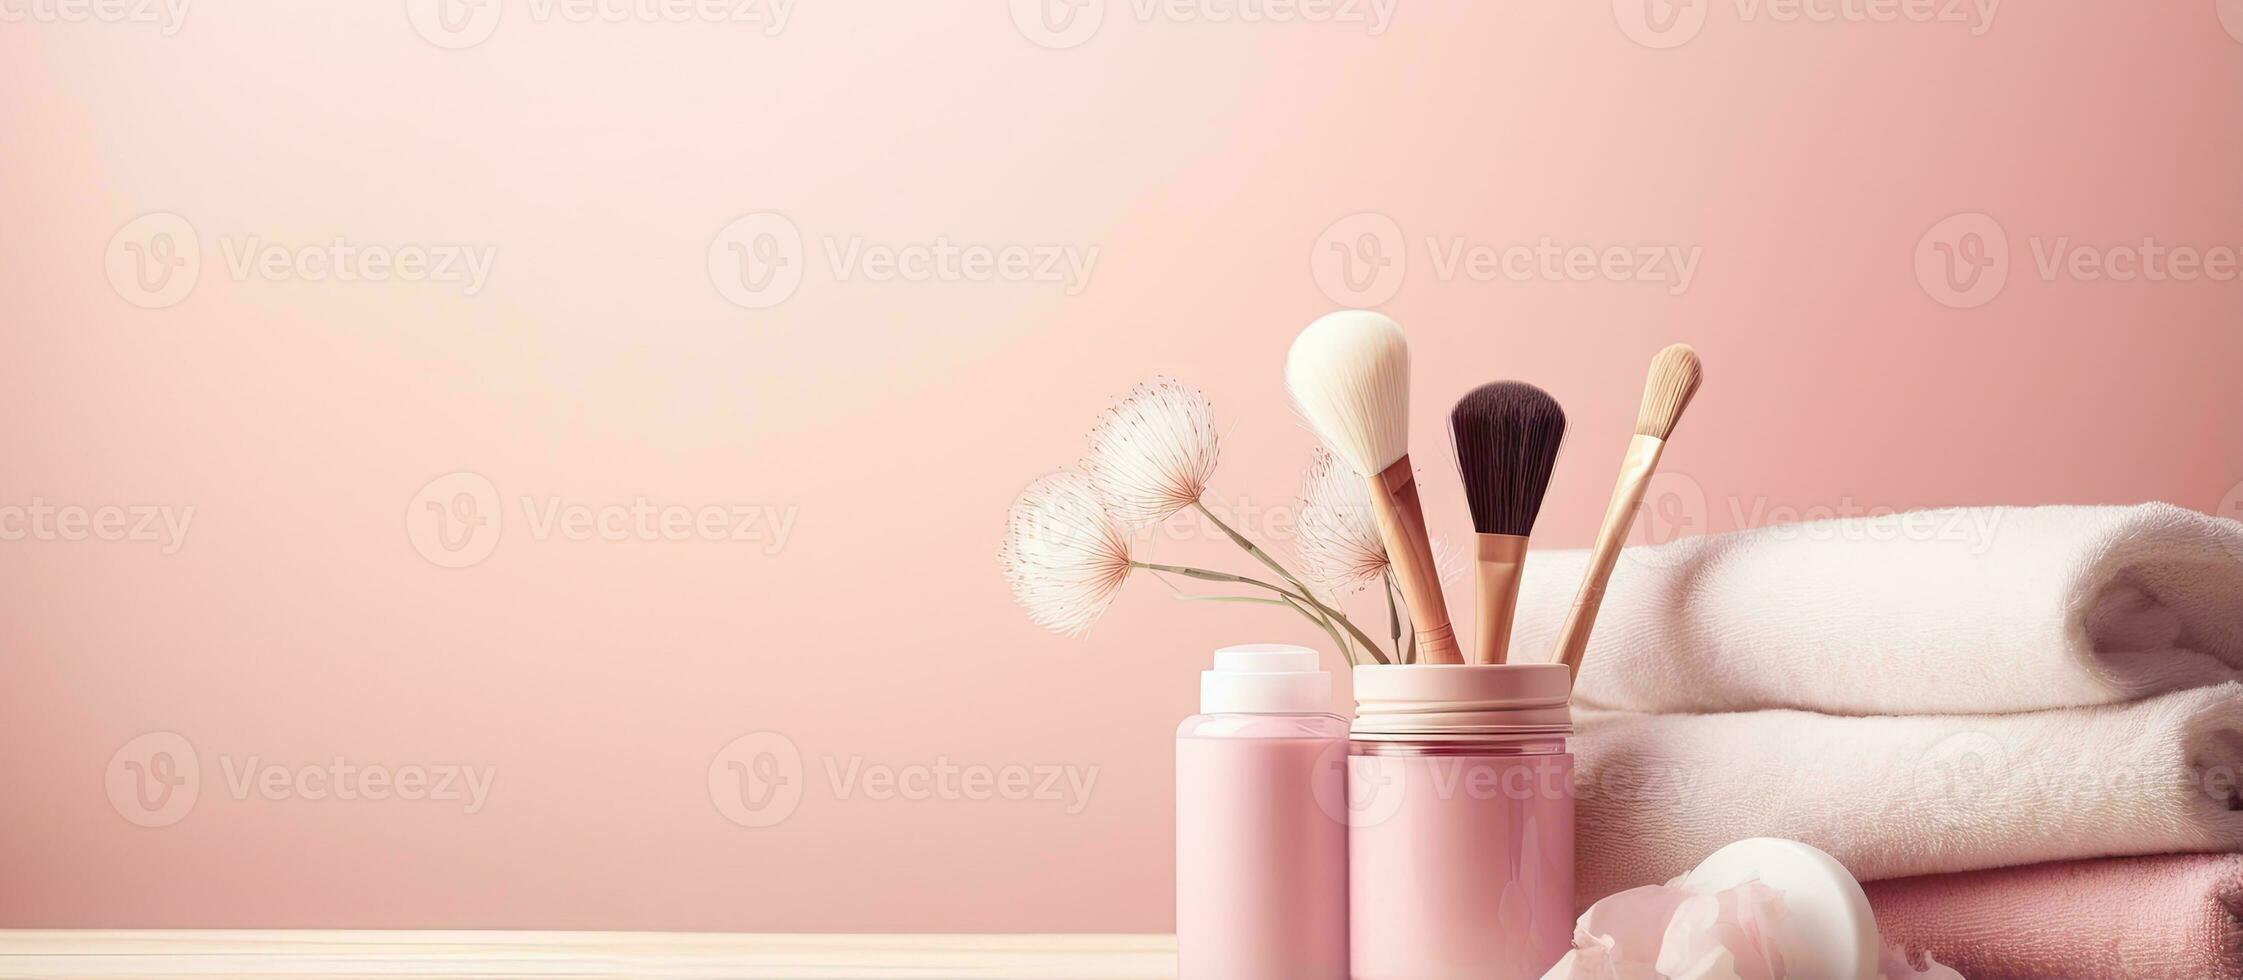 finto su di bagno arredamento con morbido illuminazione pastello rosa sfondo e vario cosmetico Accessori foto